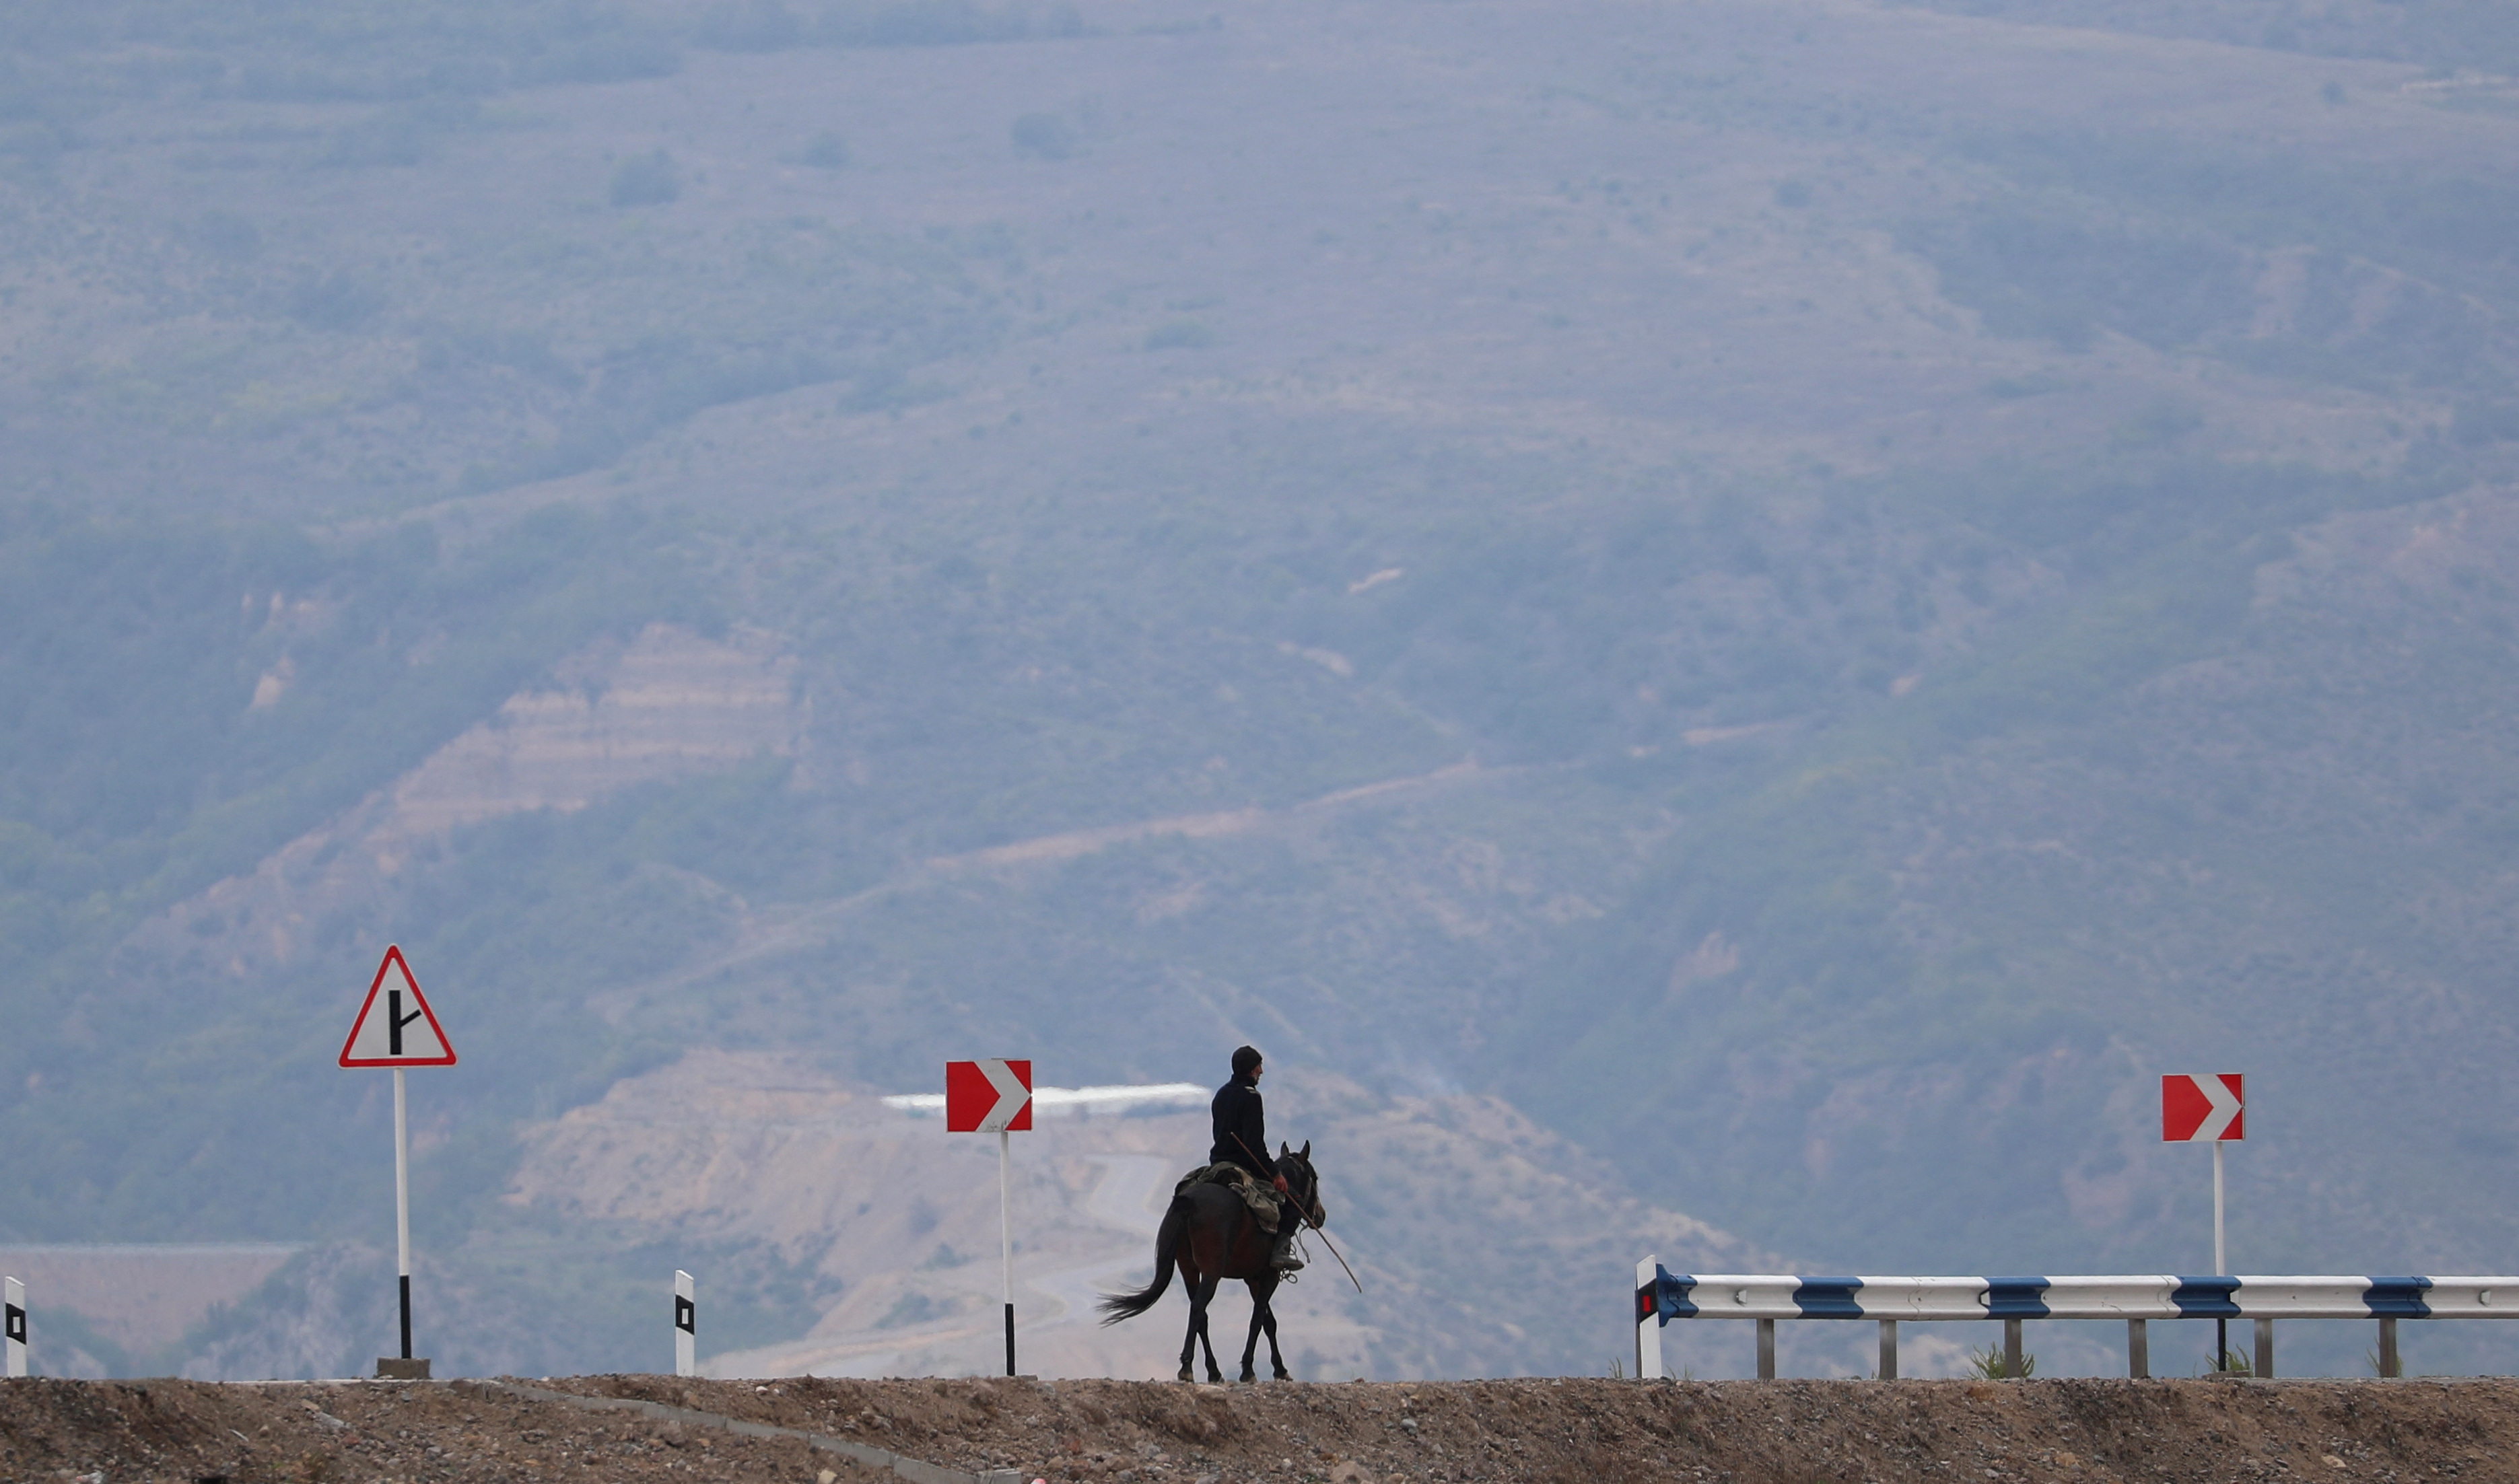 A man rides a horse near the Armenia-Azerbaijan border